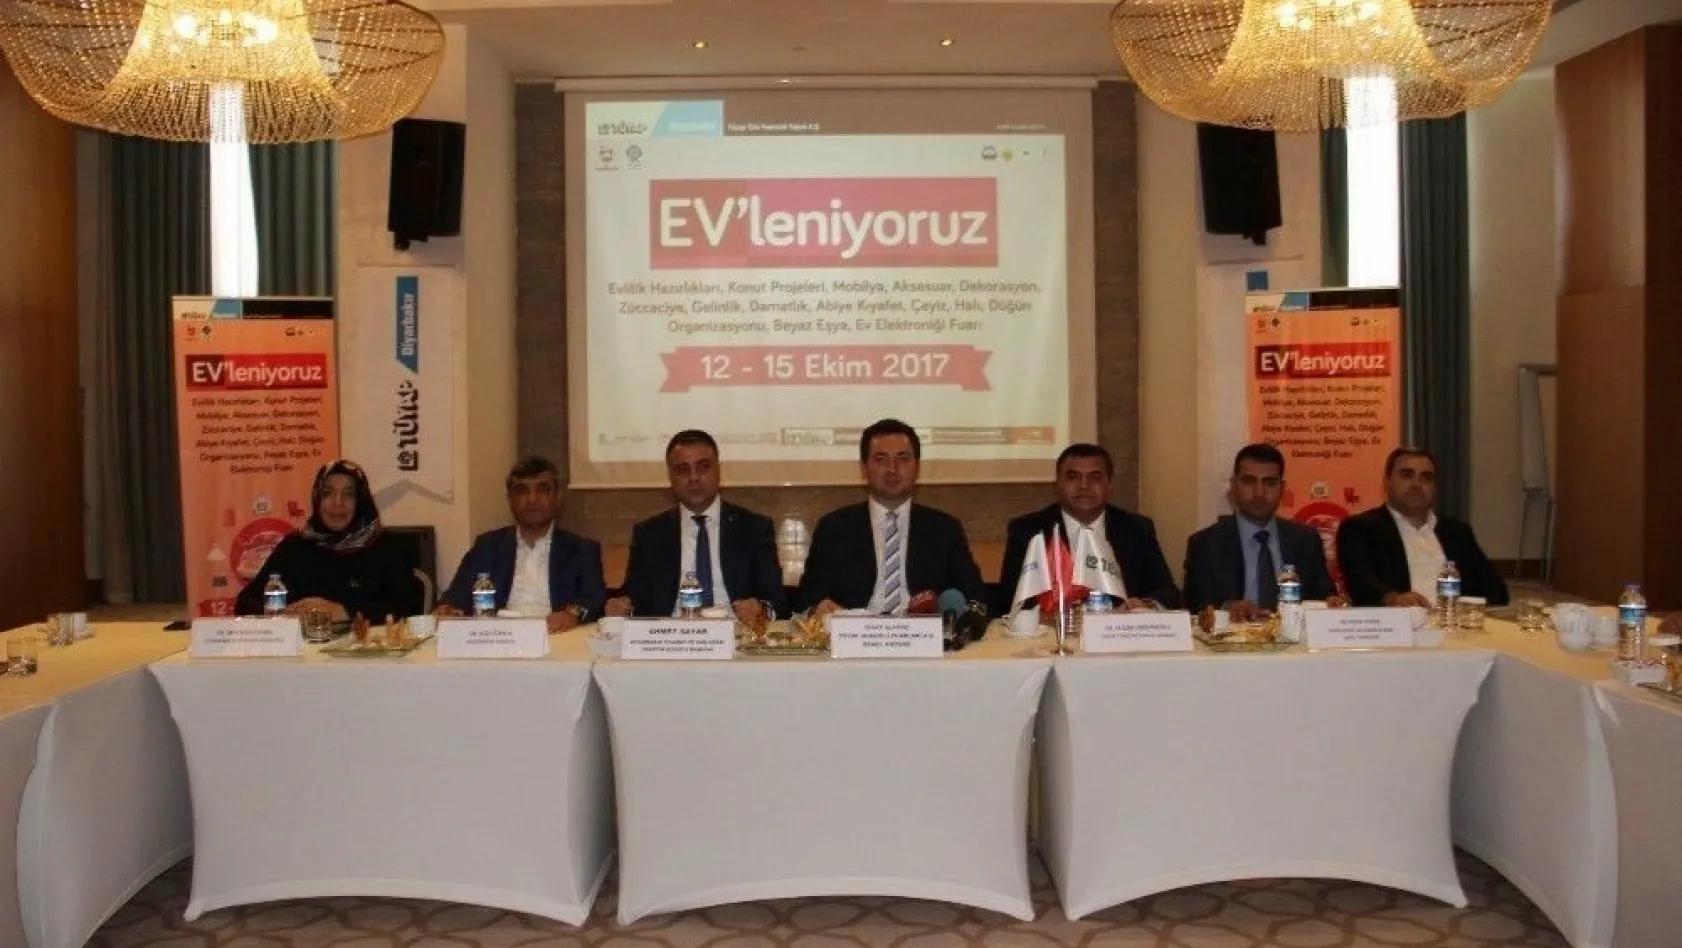 Diyarbakır'da 'Ev'leniyoruz Fuarı' açılacak
